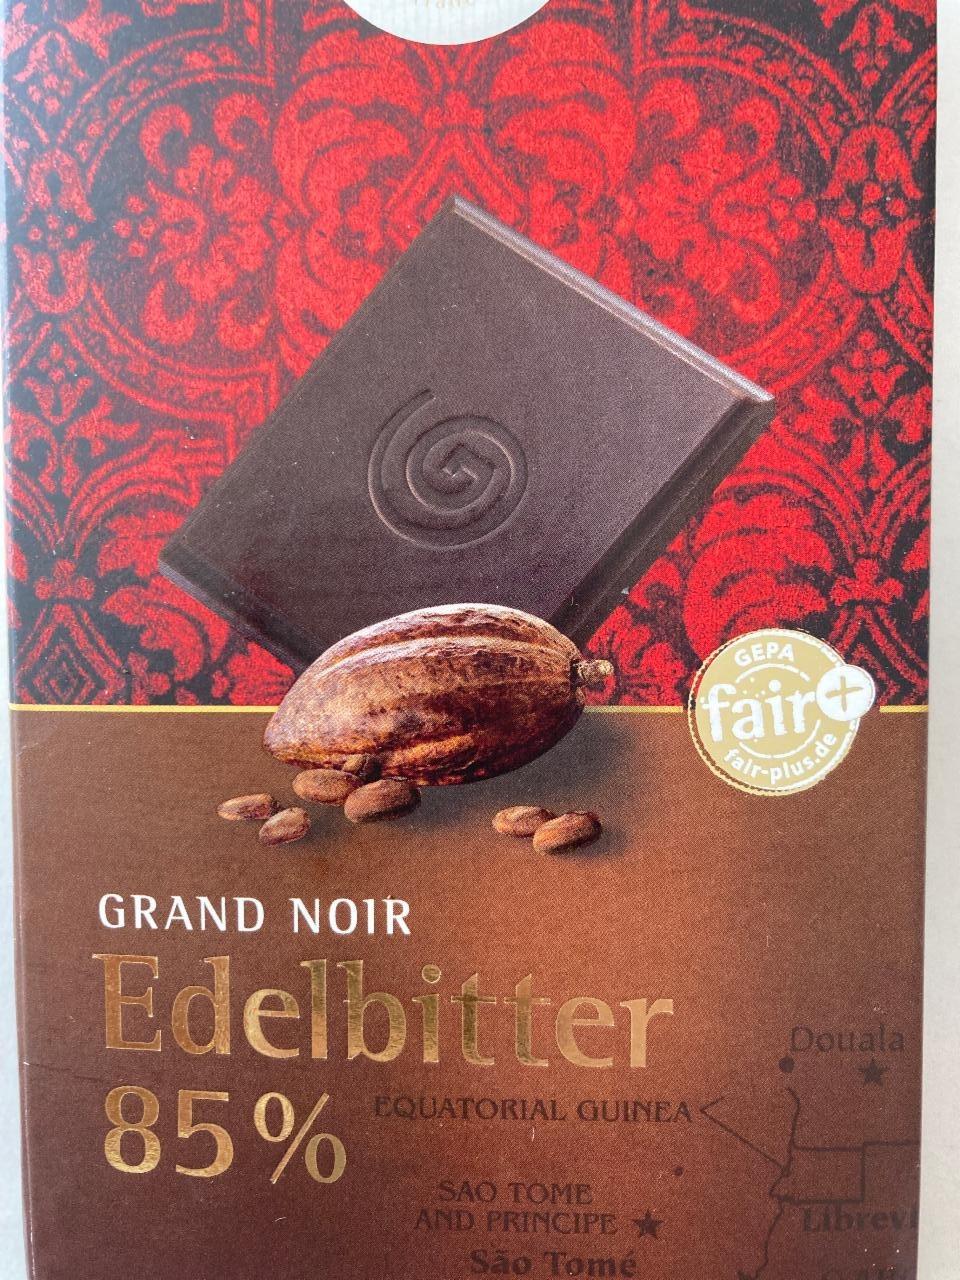 Fotografie - Grand Noir Edelbitter 85% Gepa